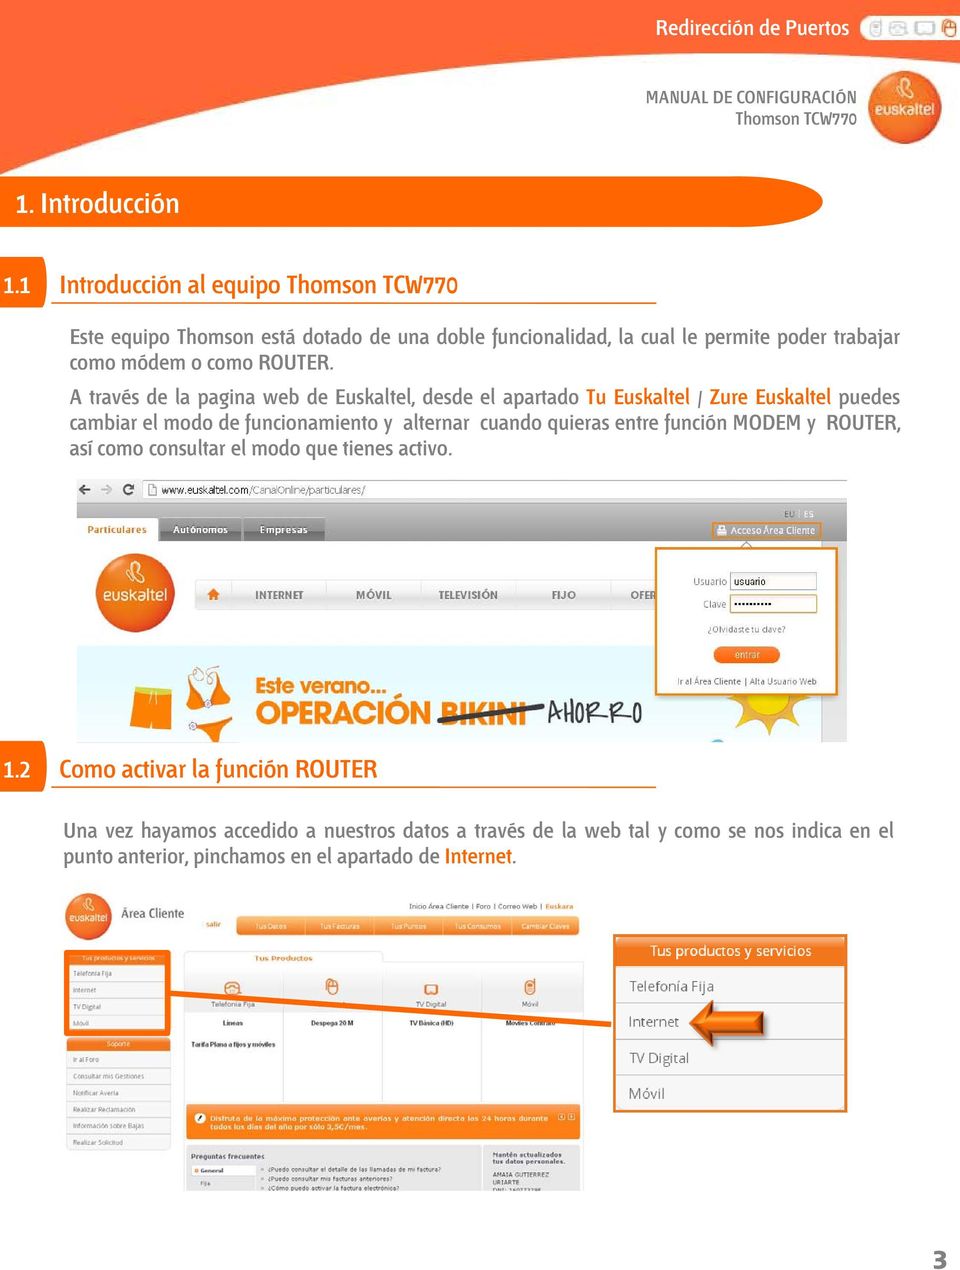 A través de la pagina web de Euskaltel, desde el apartado Tu Euskaltel / Zure Euskaltel puedes cambiar el modo de funcionamiento y alternar